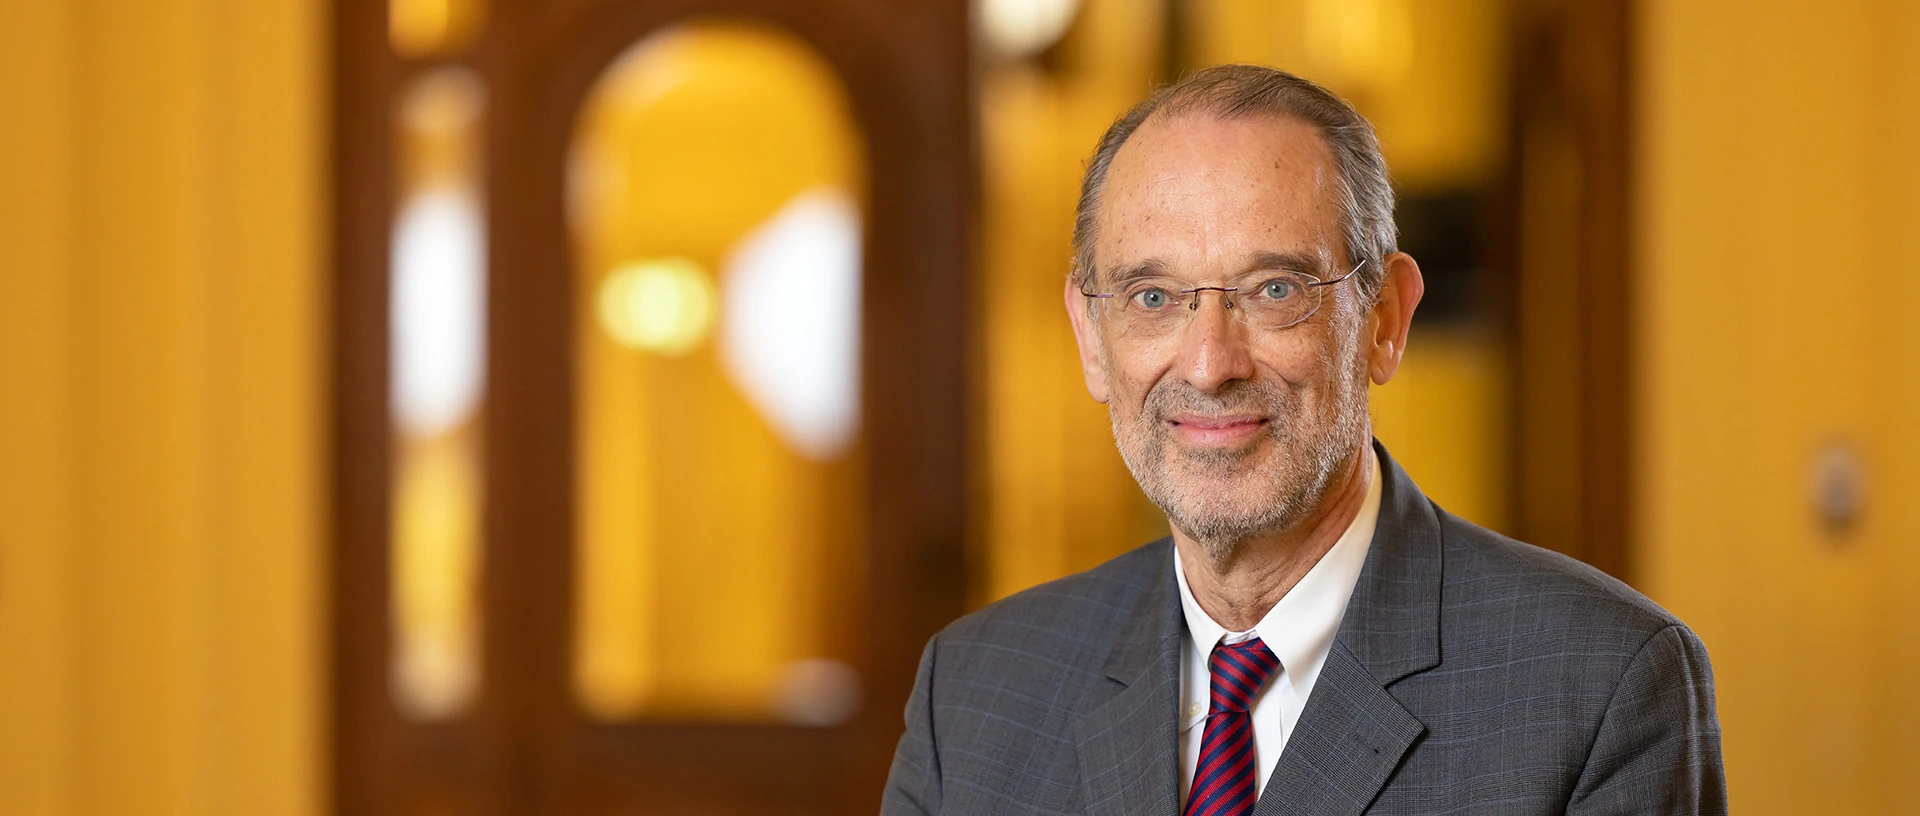 Heinz Faßmann, neu gewählter Präsident der Österreichischen Akademie der Wissenschaften. © Ludwig Schedl/ÖAW